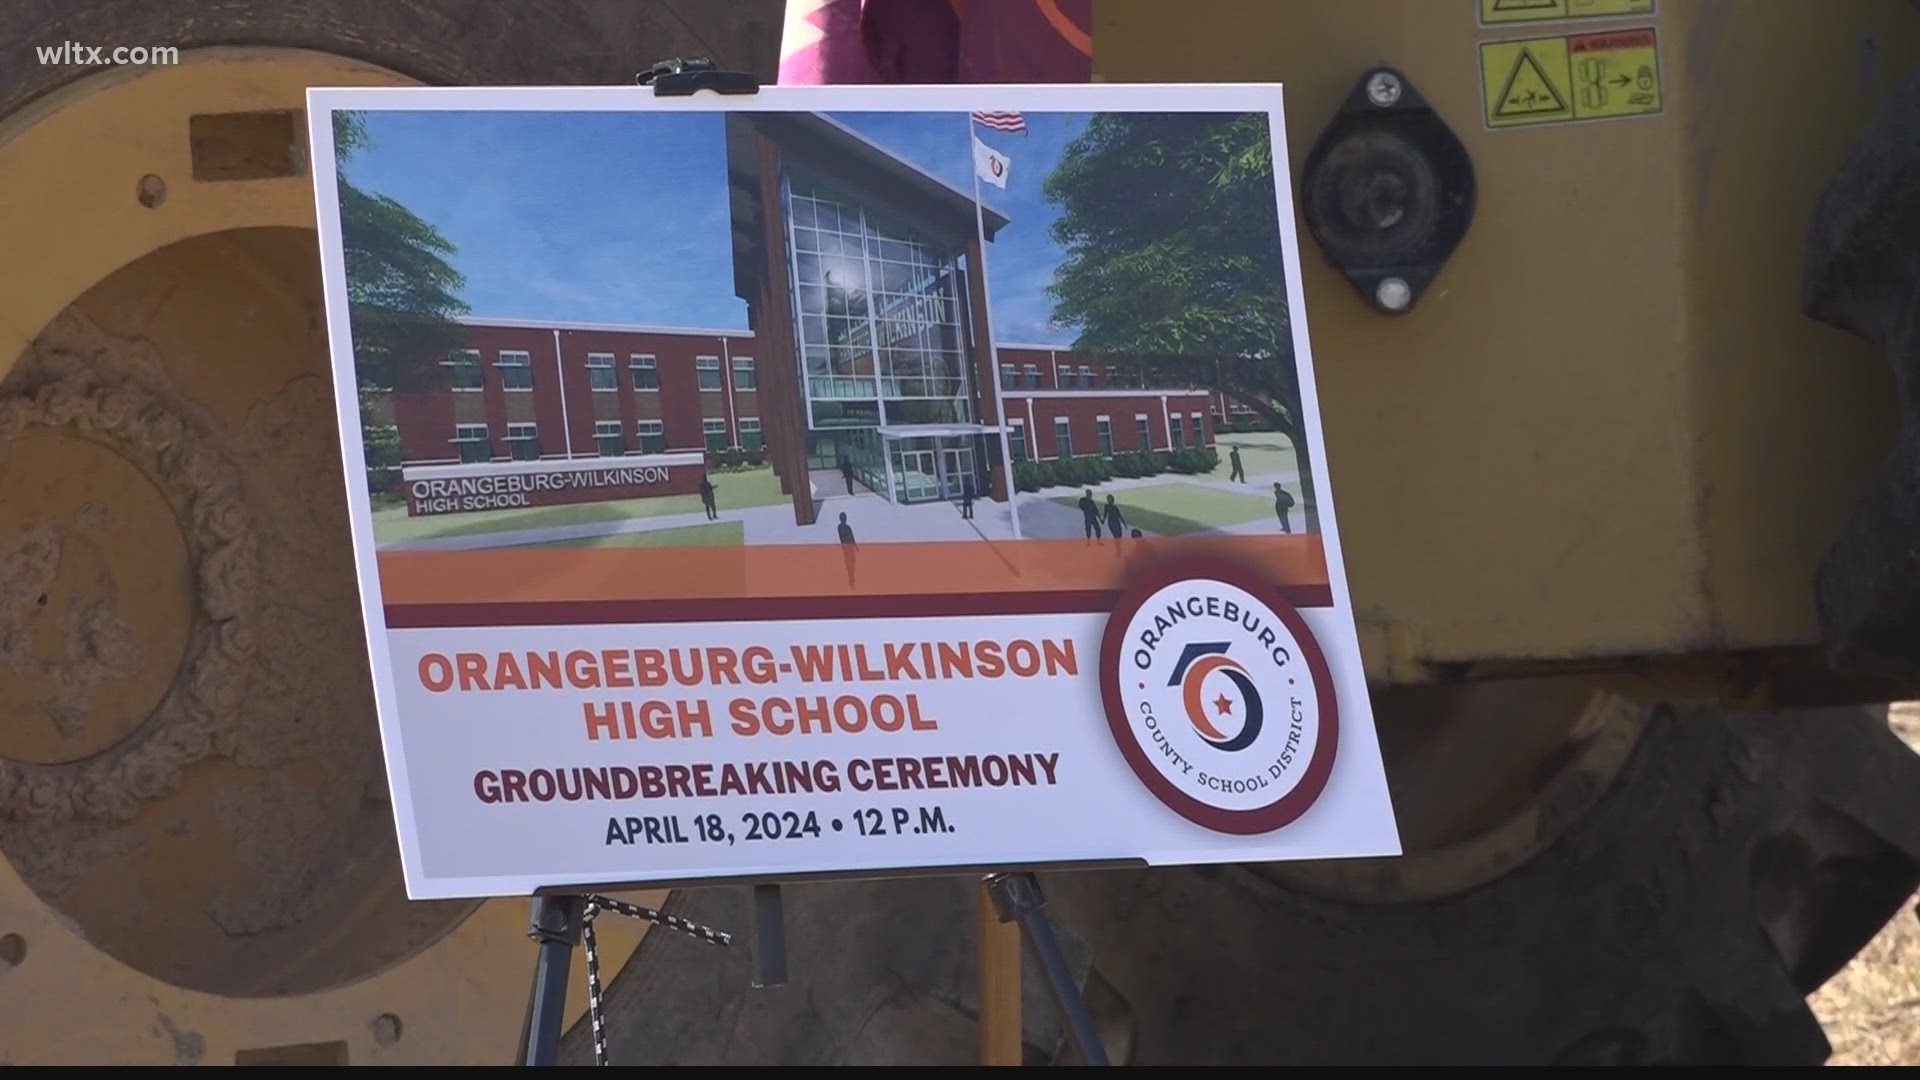 Orangeburg-Wilkinson high school's new site had it's groundbreaking ceremony today.